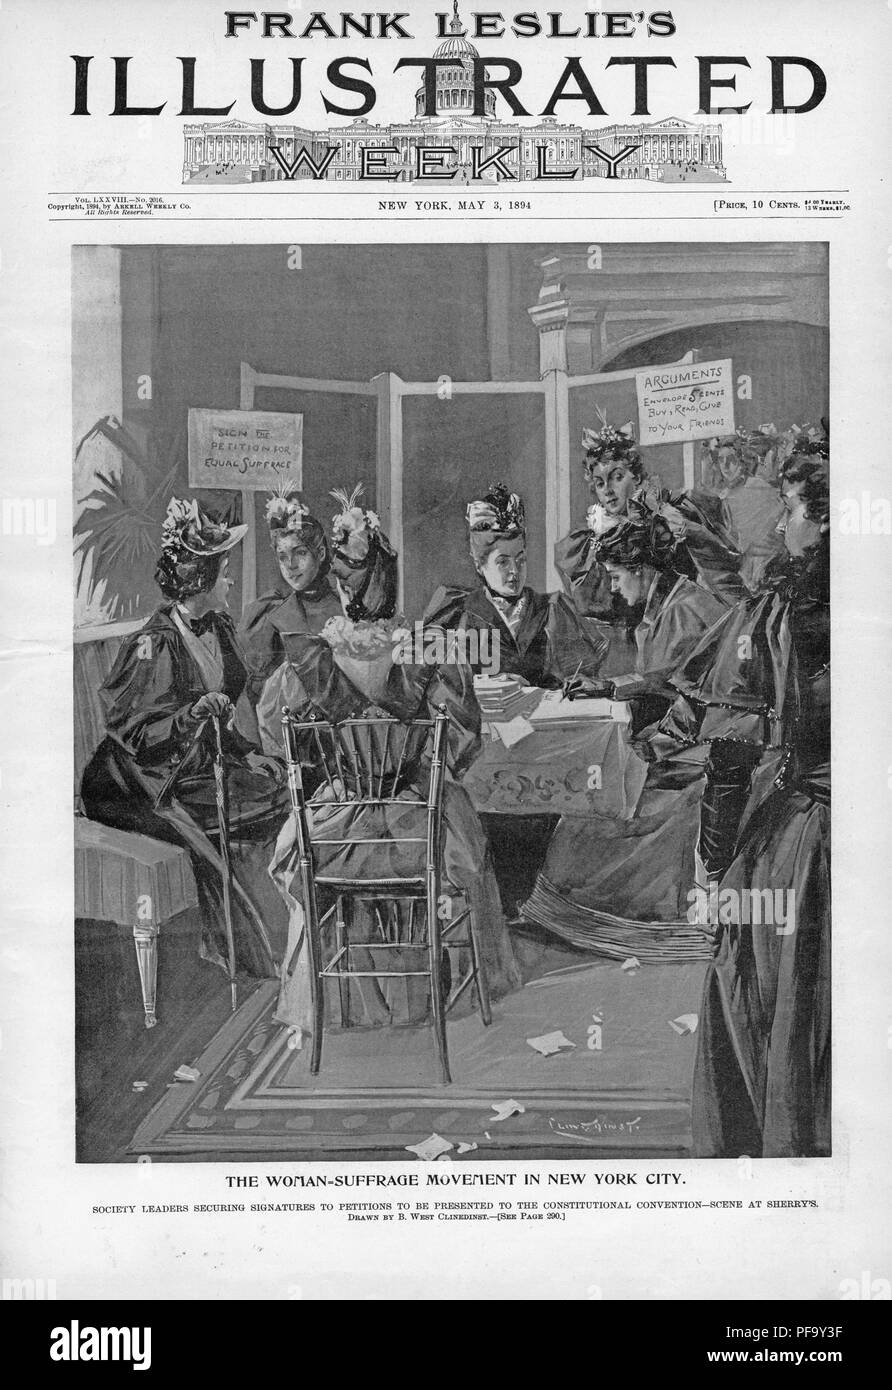 Noir et blanc illustrant les suffragettes assis dans un salon à Sherry's, l'obtention de signatures pour une pétition pour inclure les droits de vote des femmes dans un nouveau projet de constitution de l'état de New York, le Mouvement Woman-Suffrage «sous-titrées à New York", illustré par Benjamin West Clinedinst, et publié dans Frank Leslie's Illustrated Weekly pour le marché américain, 1894. () Banque D'Images